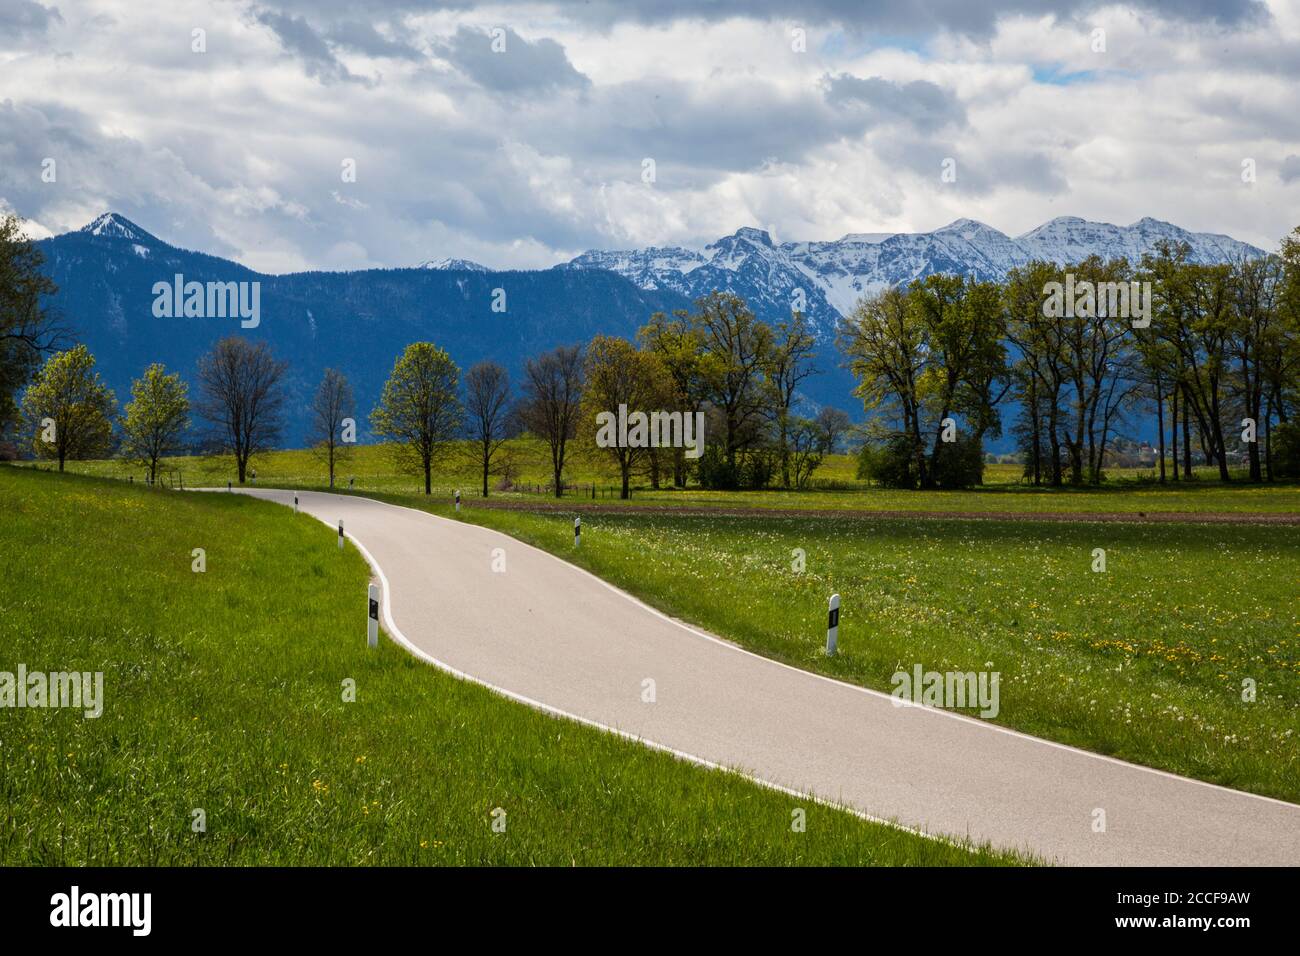 Germania, Baviera, strada di campagna ai piedi delle Alpi Foto Stock